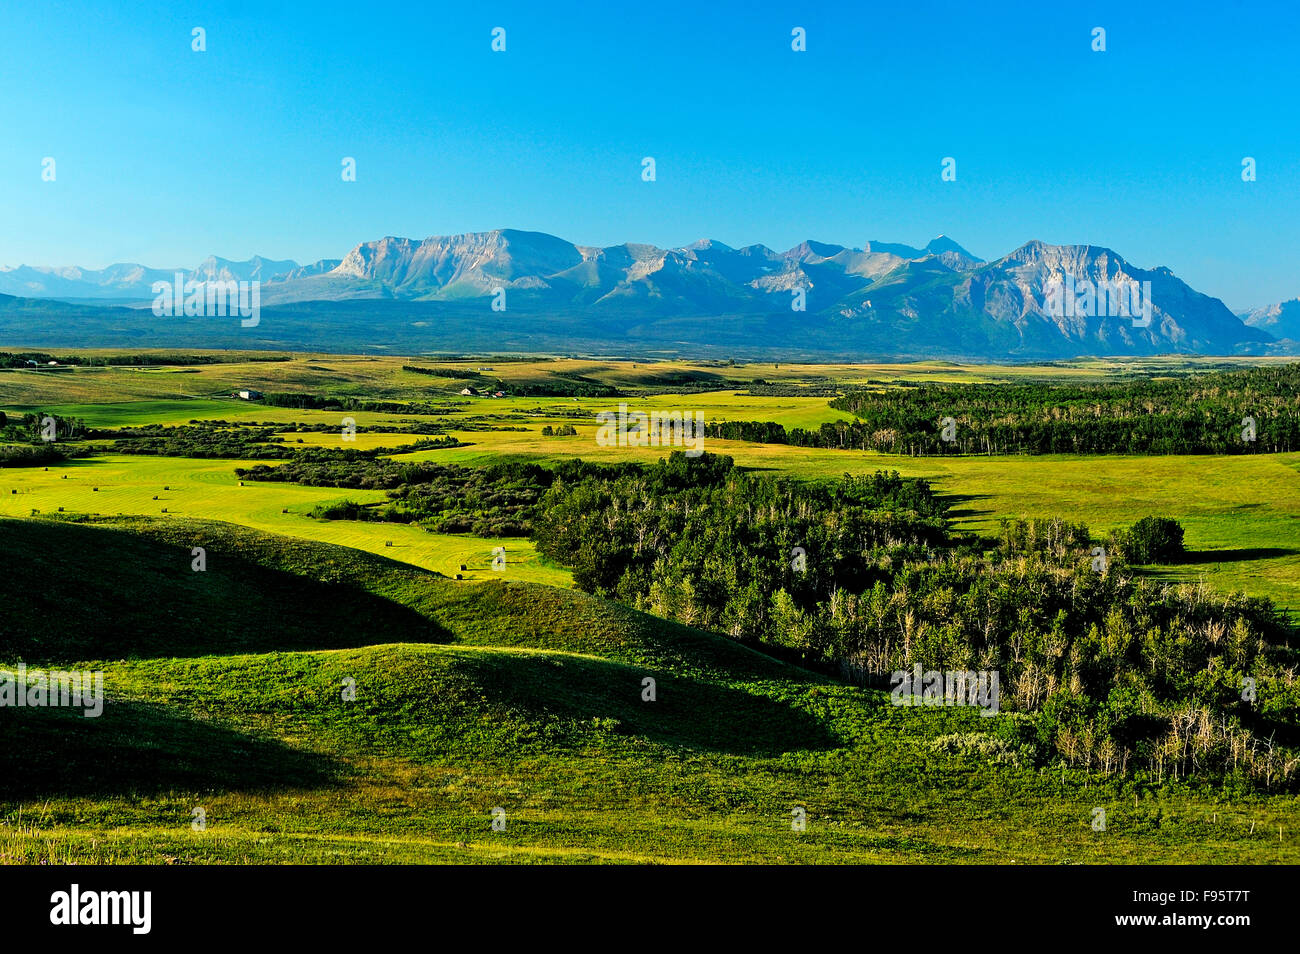 Un paisaje de verano imagen mostrando la amplia expansión de Alberta ver ranchos ejecutando hasta la base de la montaña rocosa de Foto de stock